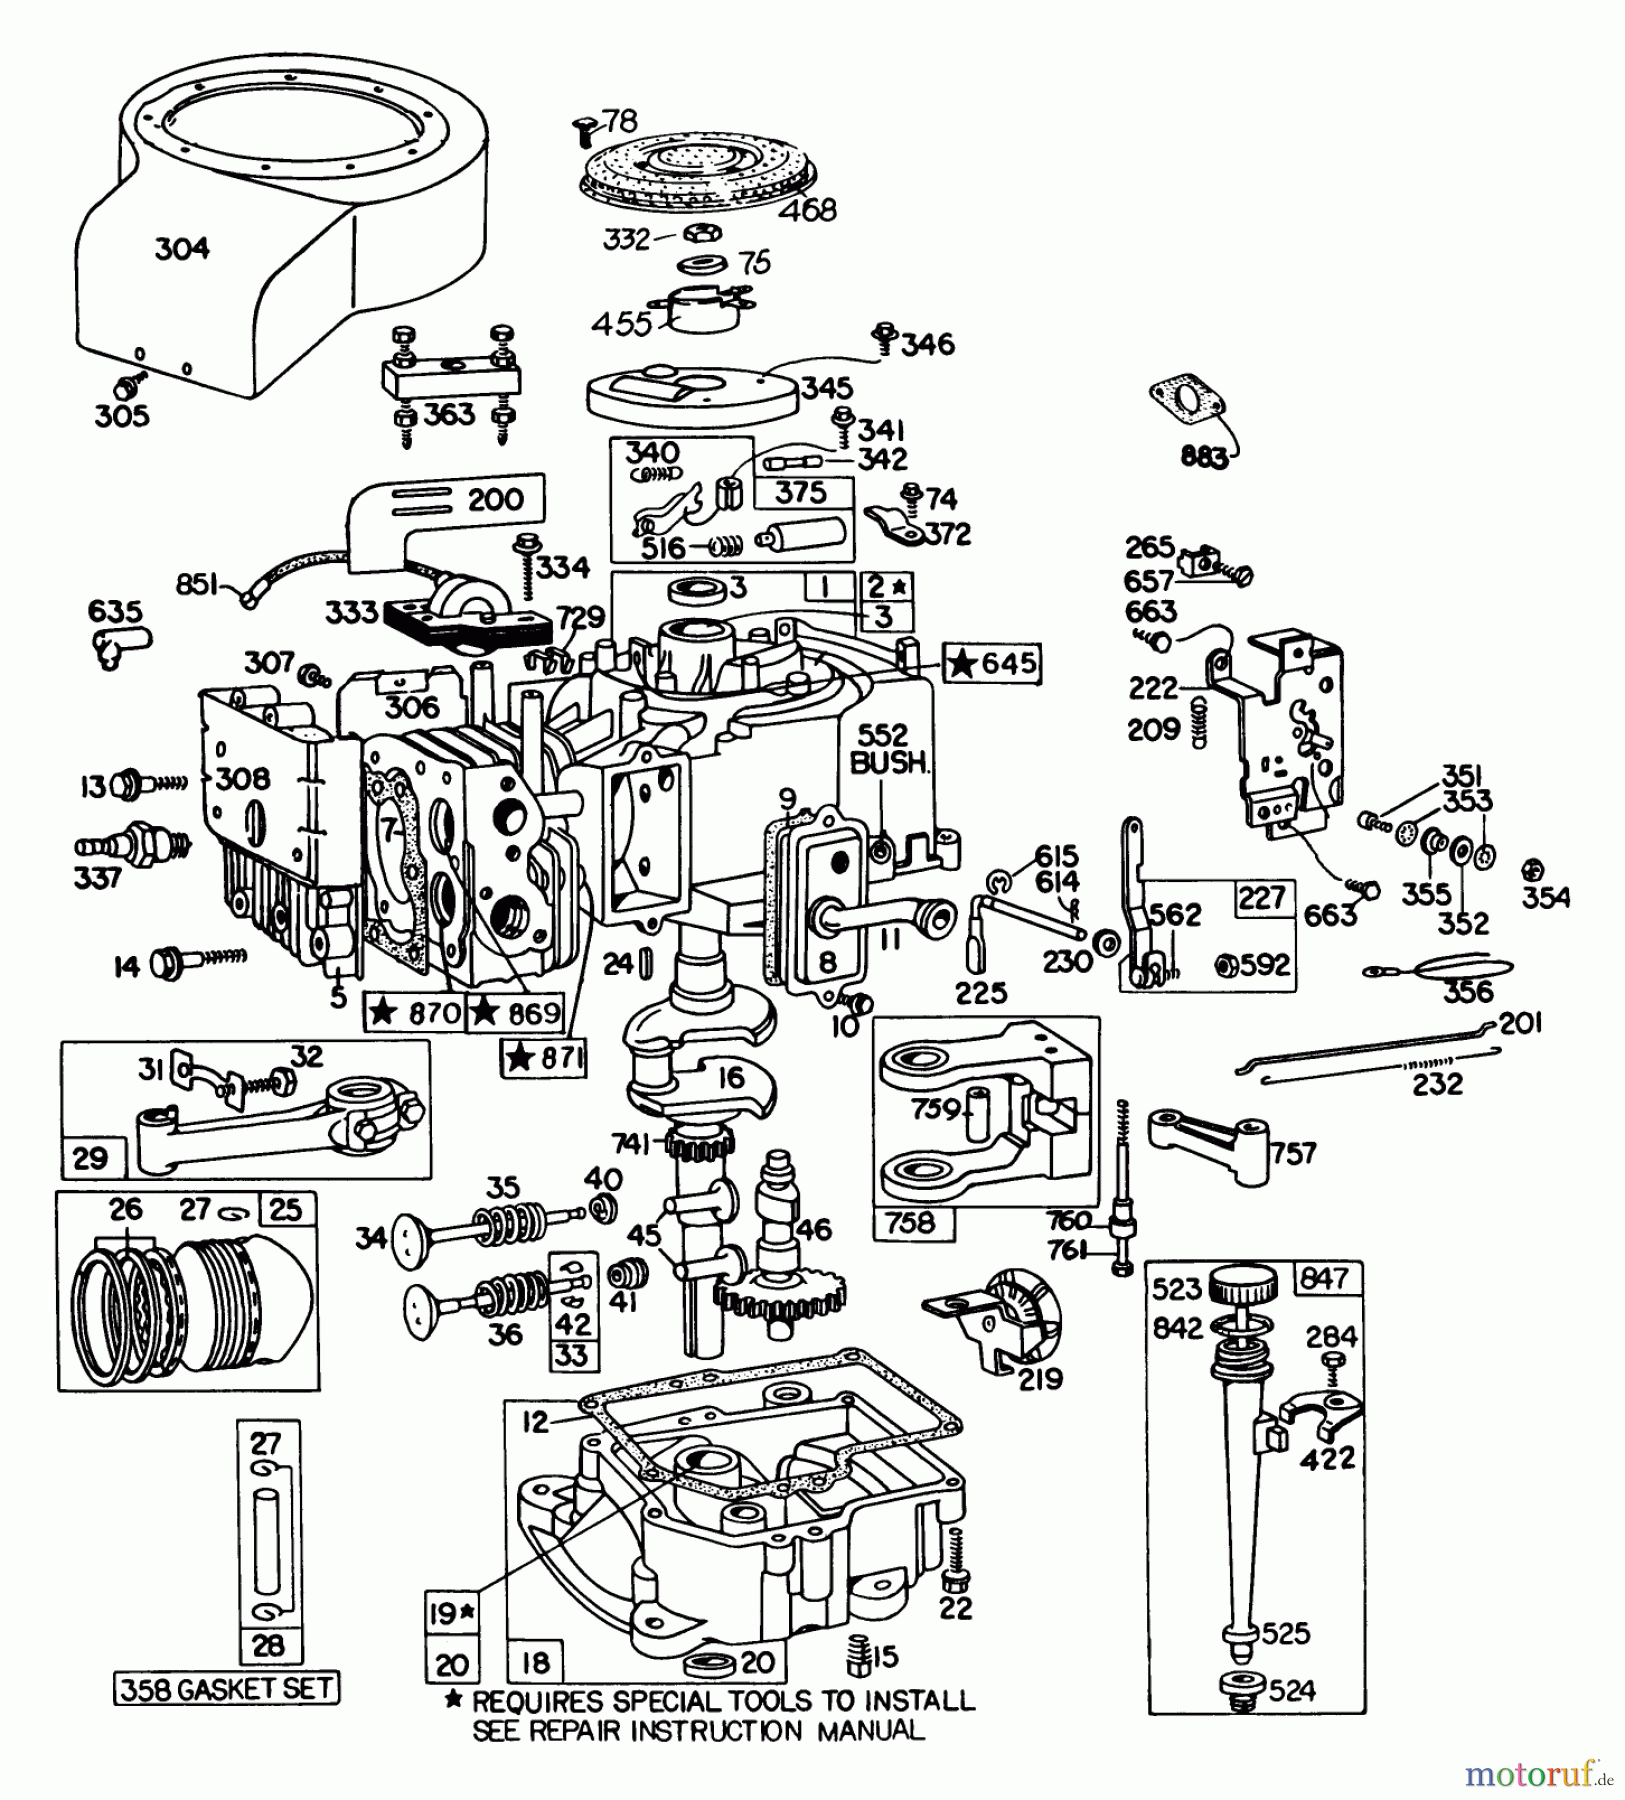  Toro Neu Mowers, Lawn & Garden Tractor Seite 1 57360 (11-32) - Toro 11-32 Lawn Tractor, 1981 (1000001-1999999) ENGINE BRIGGS & STRATTON MODEL 191707-5641-01 (MODEL 57300)